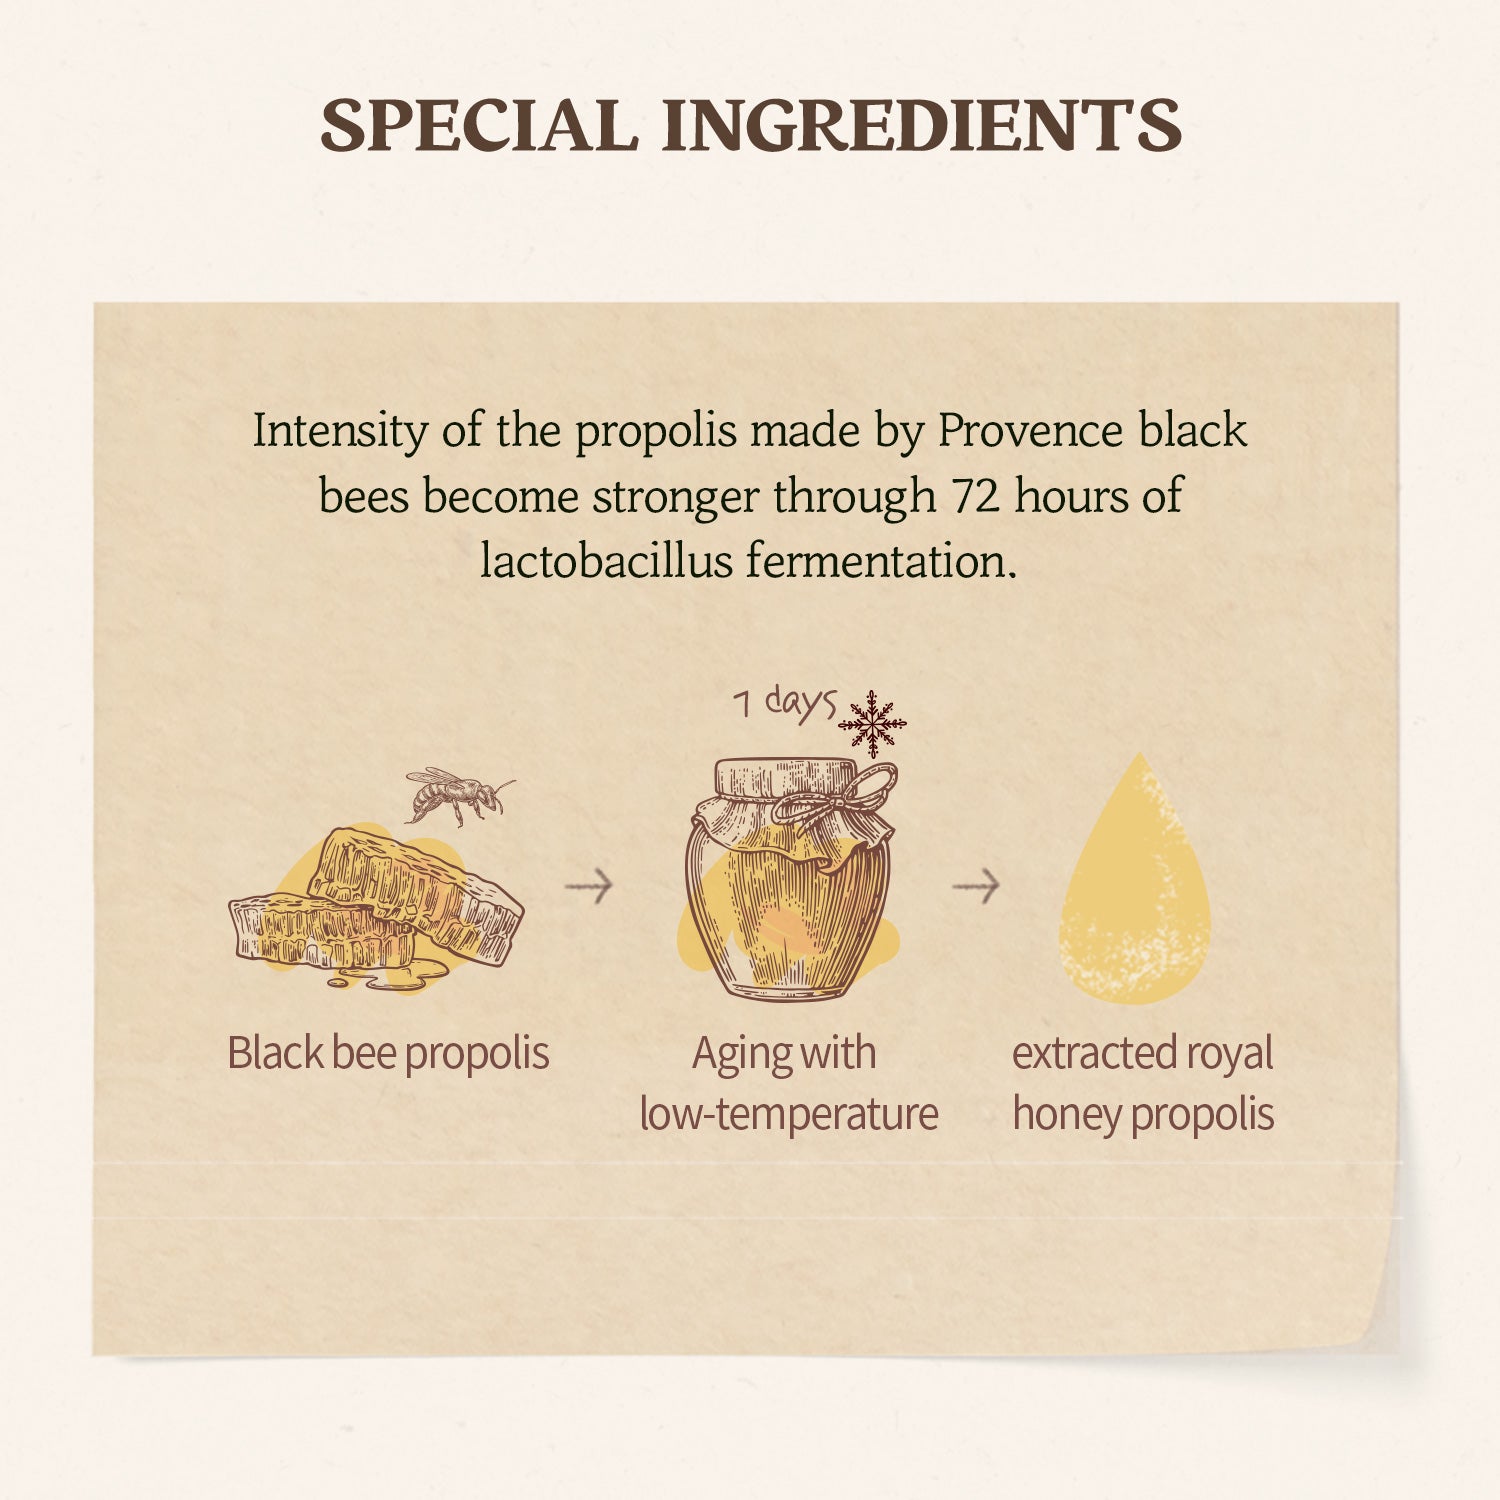 Royal Honey Enrich Multi Balm